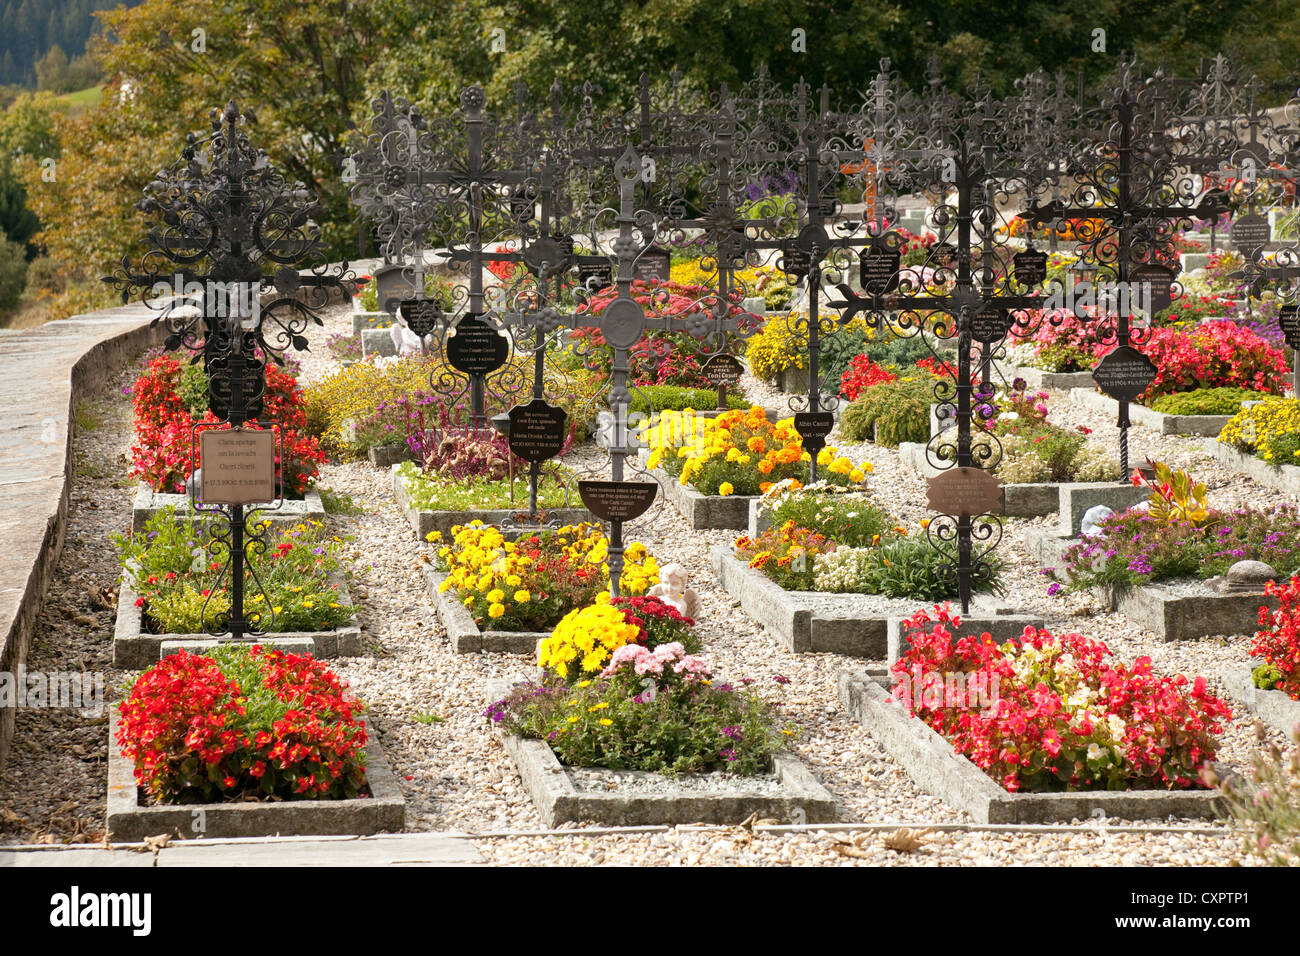 Bunte Blumen auf Gräbern in einem Schweizer Friedhof, St. Remigius, Falera,  Graubünden, Schweiz Stockfotografie - Alamy